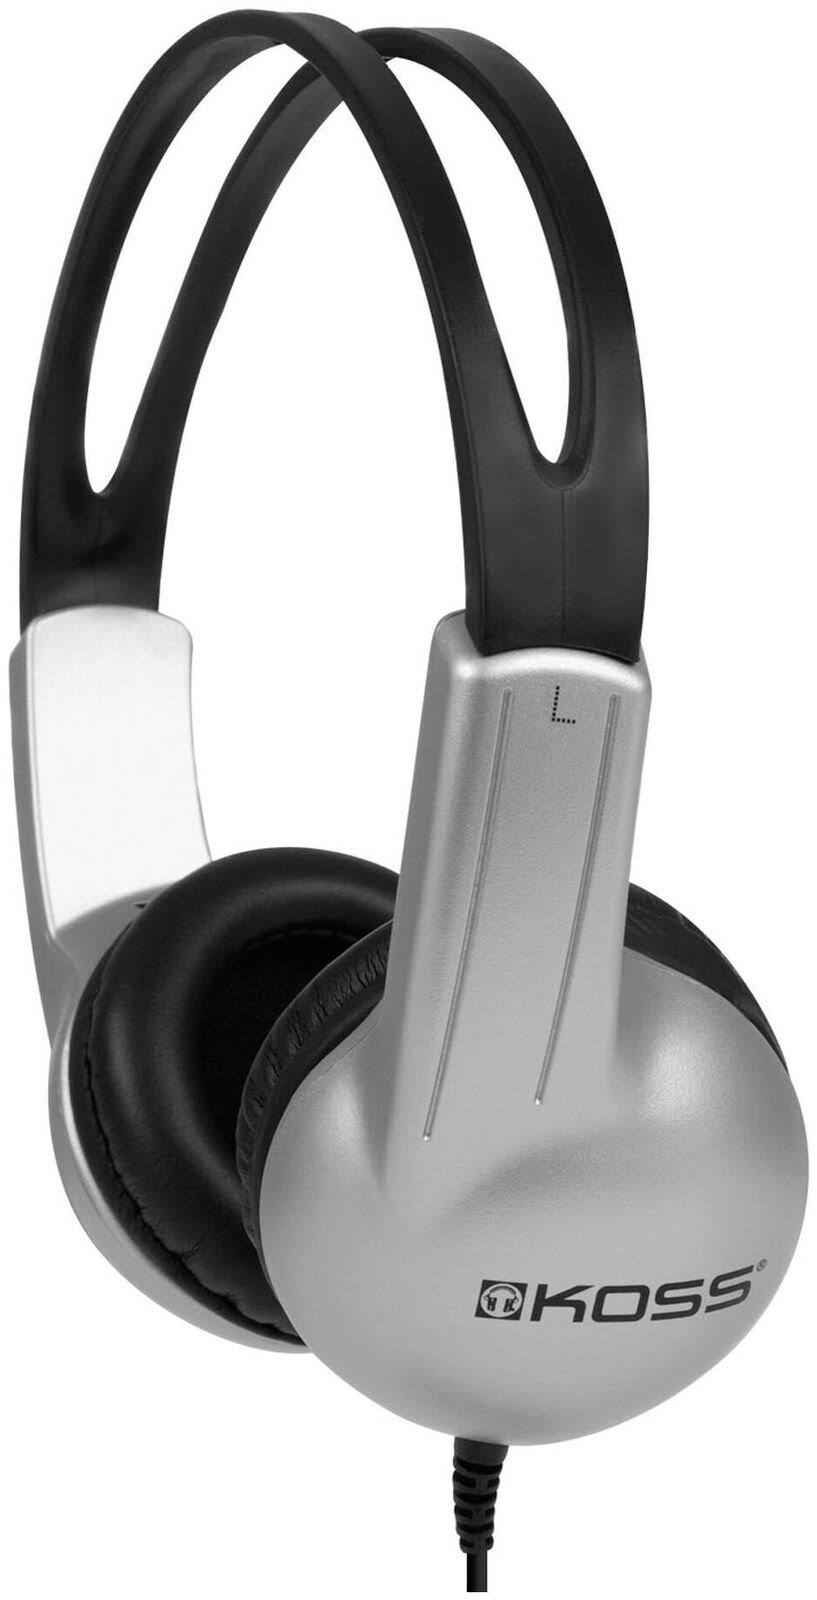 Koss Stereo Headphones - Black & Silver